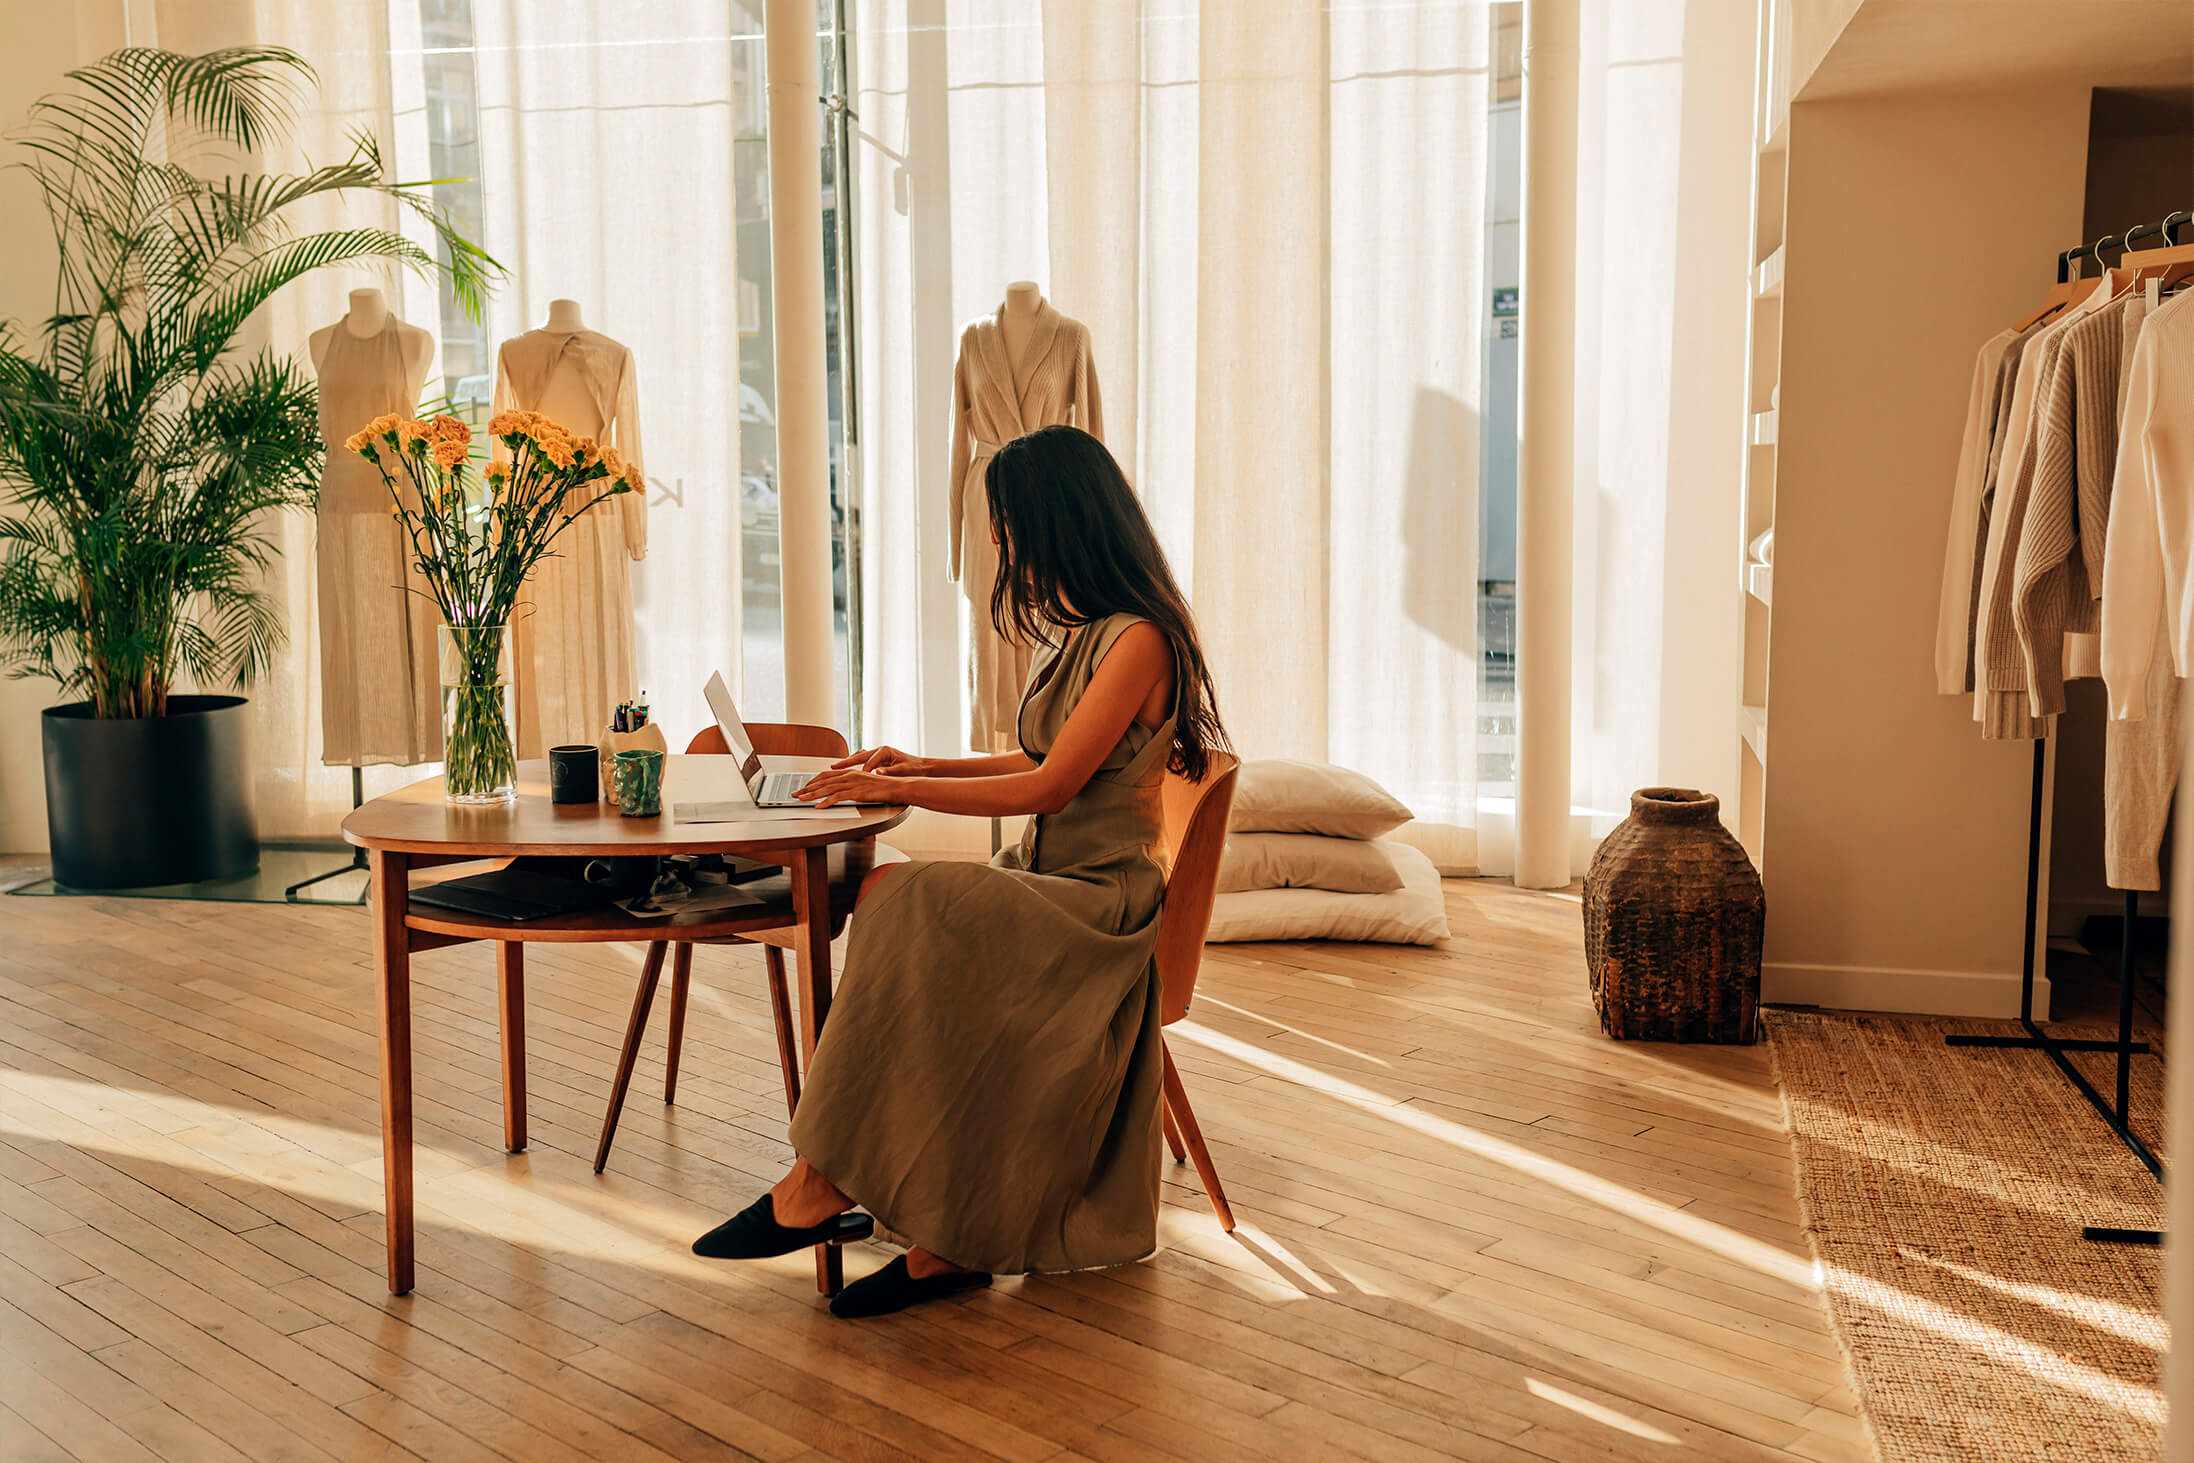 Zdjęcie projektanta Le Kasha siedzącego przed stołem w dobrze oświetlonym atelier.